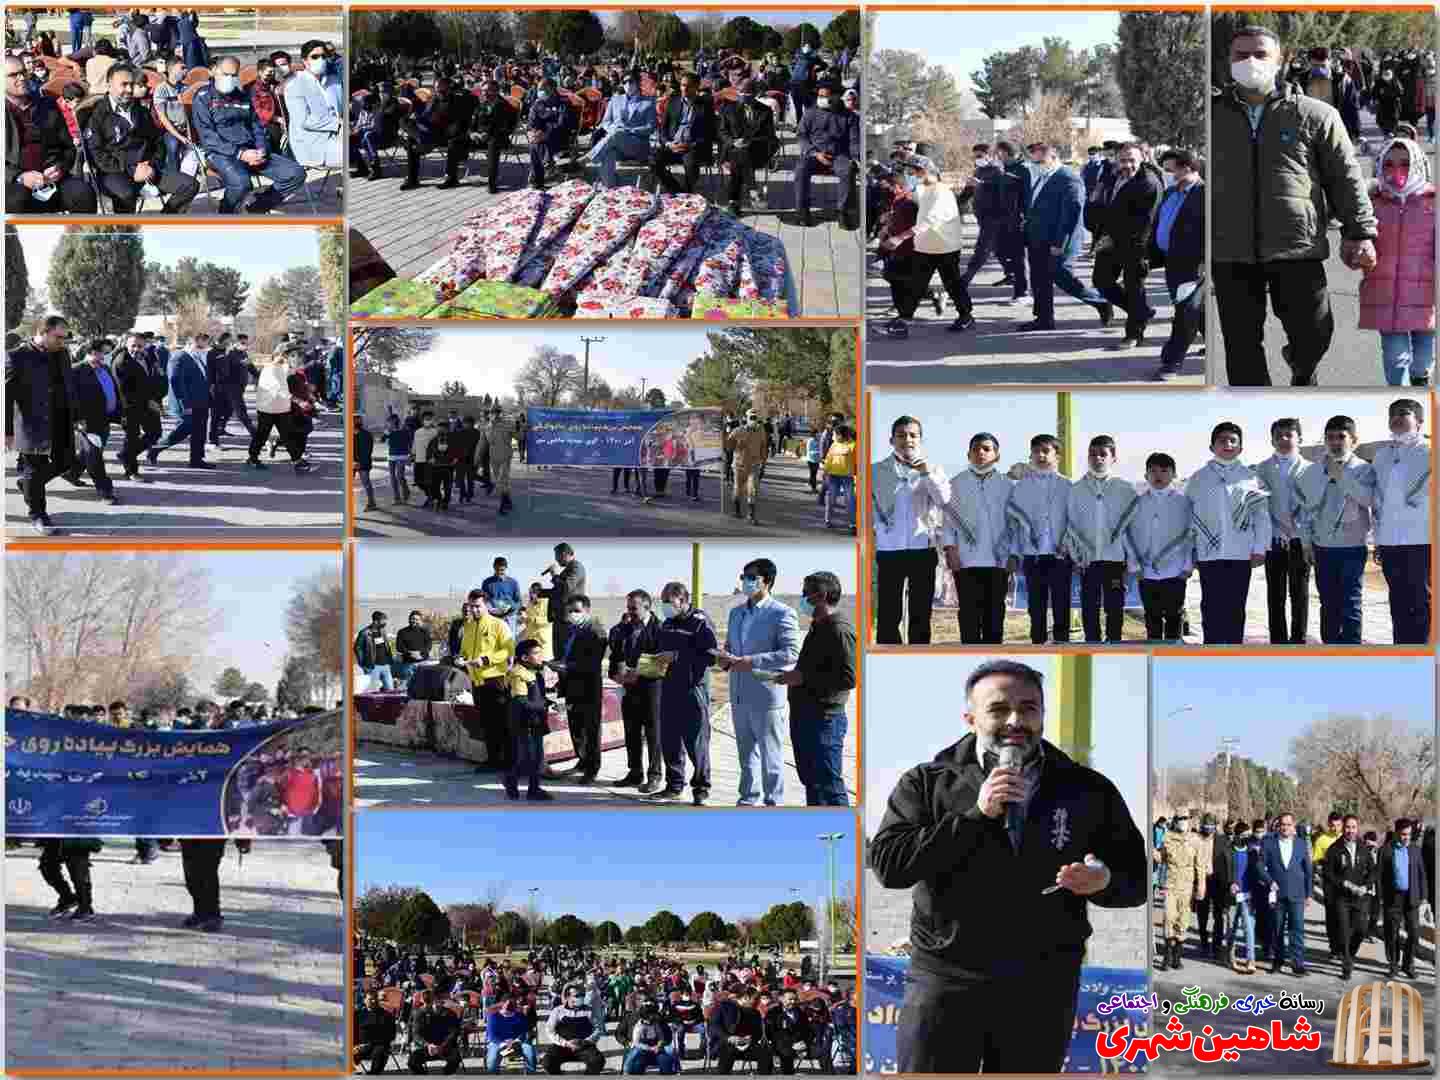 راهپیمایی خانوادگی - کوی مهدیه شاهین شهر-آذرماه 1400- پایگاه خبری شاهین شهری